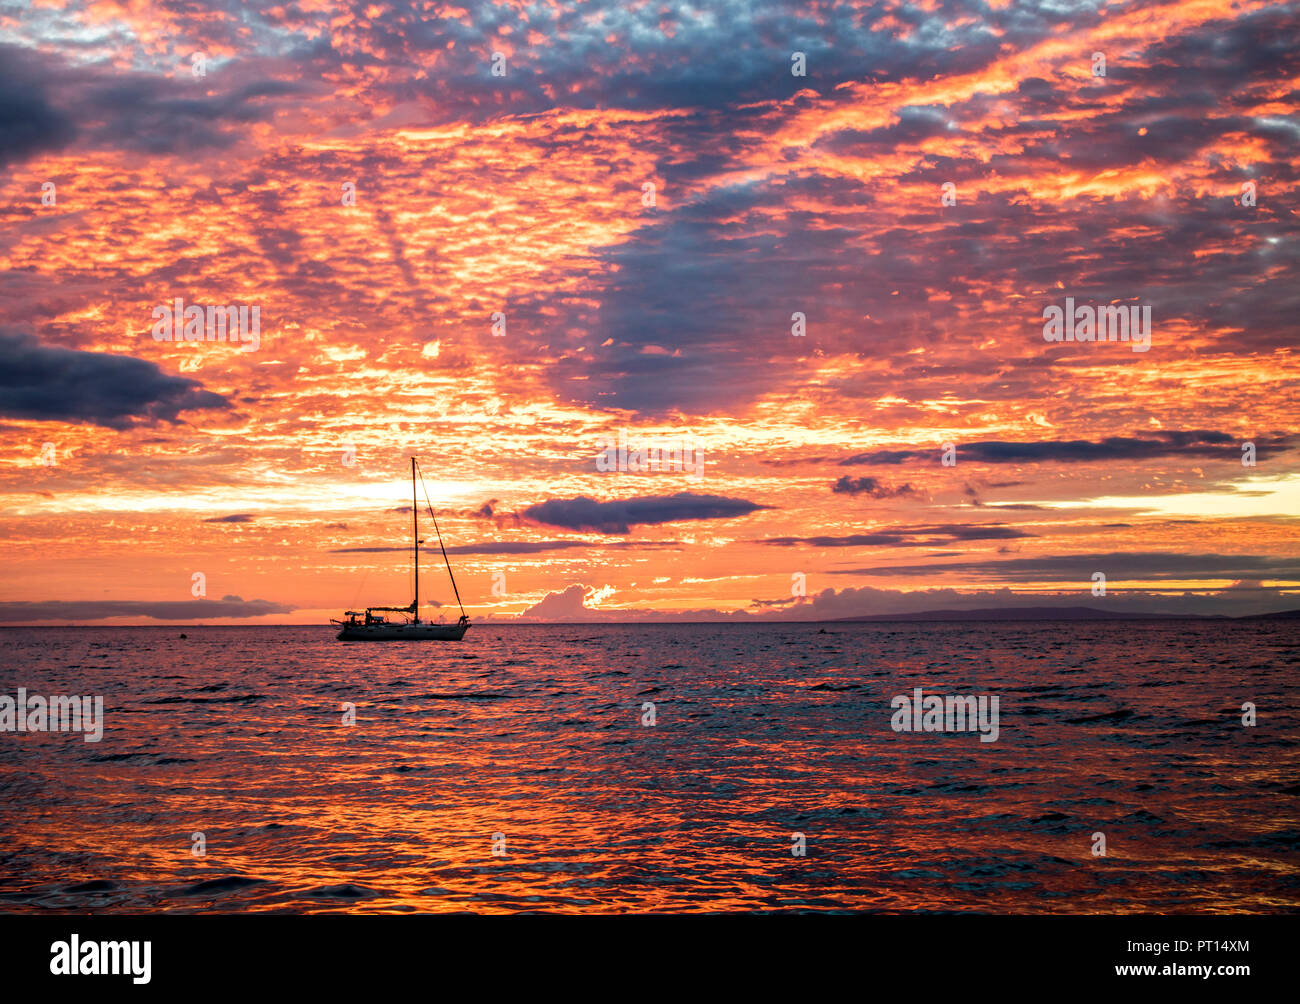 Coucher Soleil nuages orange lumineux ciel de remplissage et de réfléchir sur la surface de l'océan, avec un bateau en silhouette sur l'horizon Banque D'Images